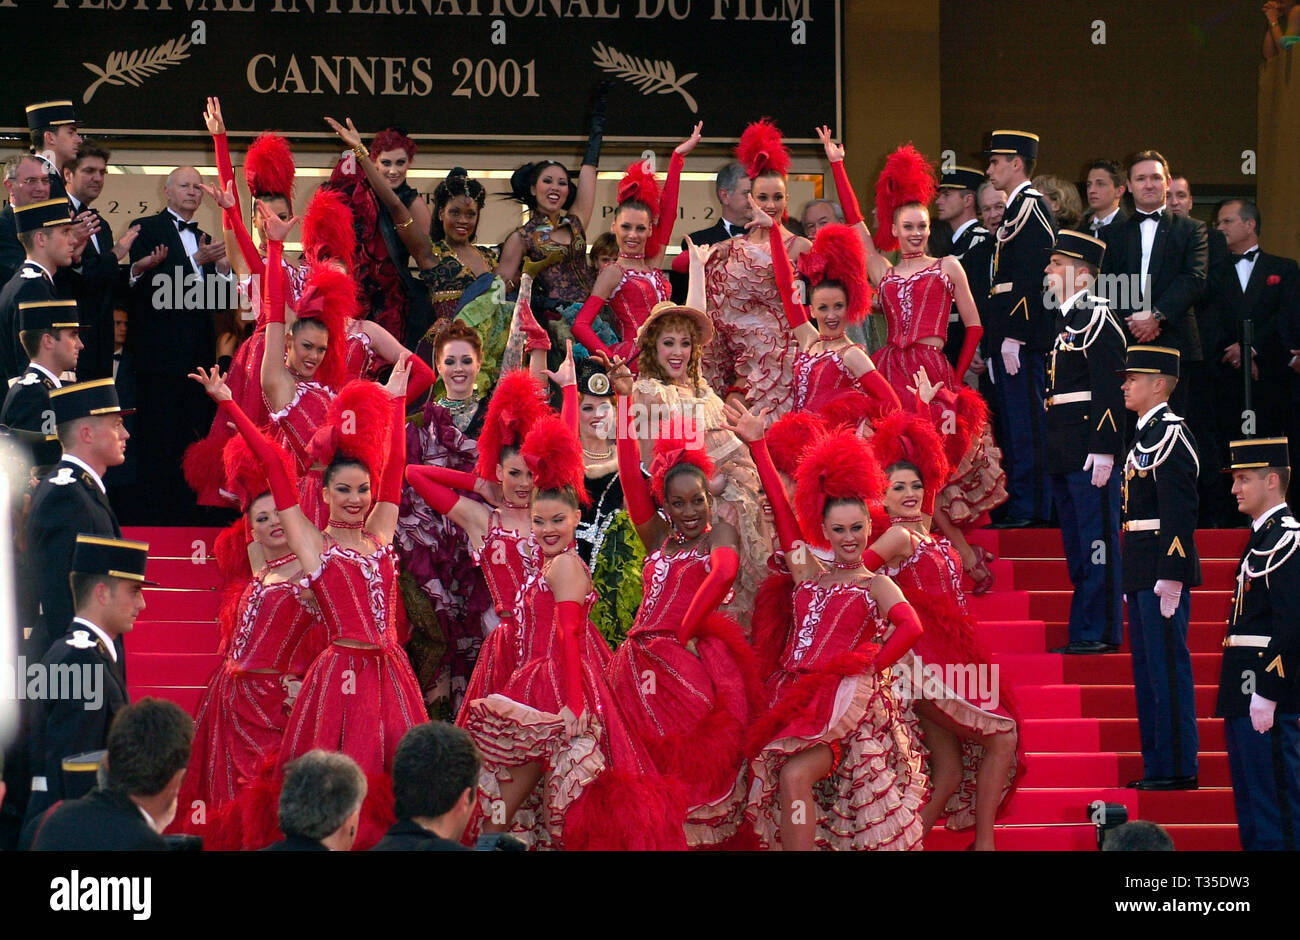 CANNES, Frankreich. Mai 09, 2001: Can-can Tänzer aus der Pariser Folies Bergere bei der Premiere von Moulin Rouge, die das 54. Festival von Cannes eröffnet. © Paul Smith/Featureflash Stockfoto